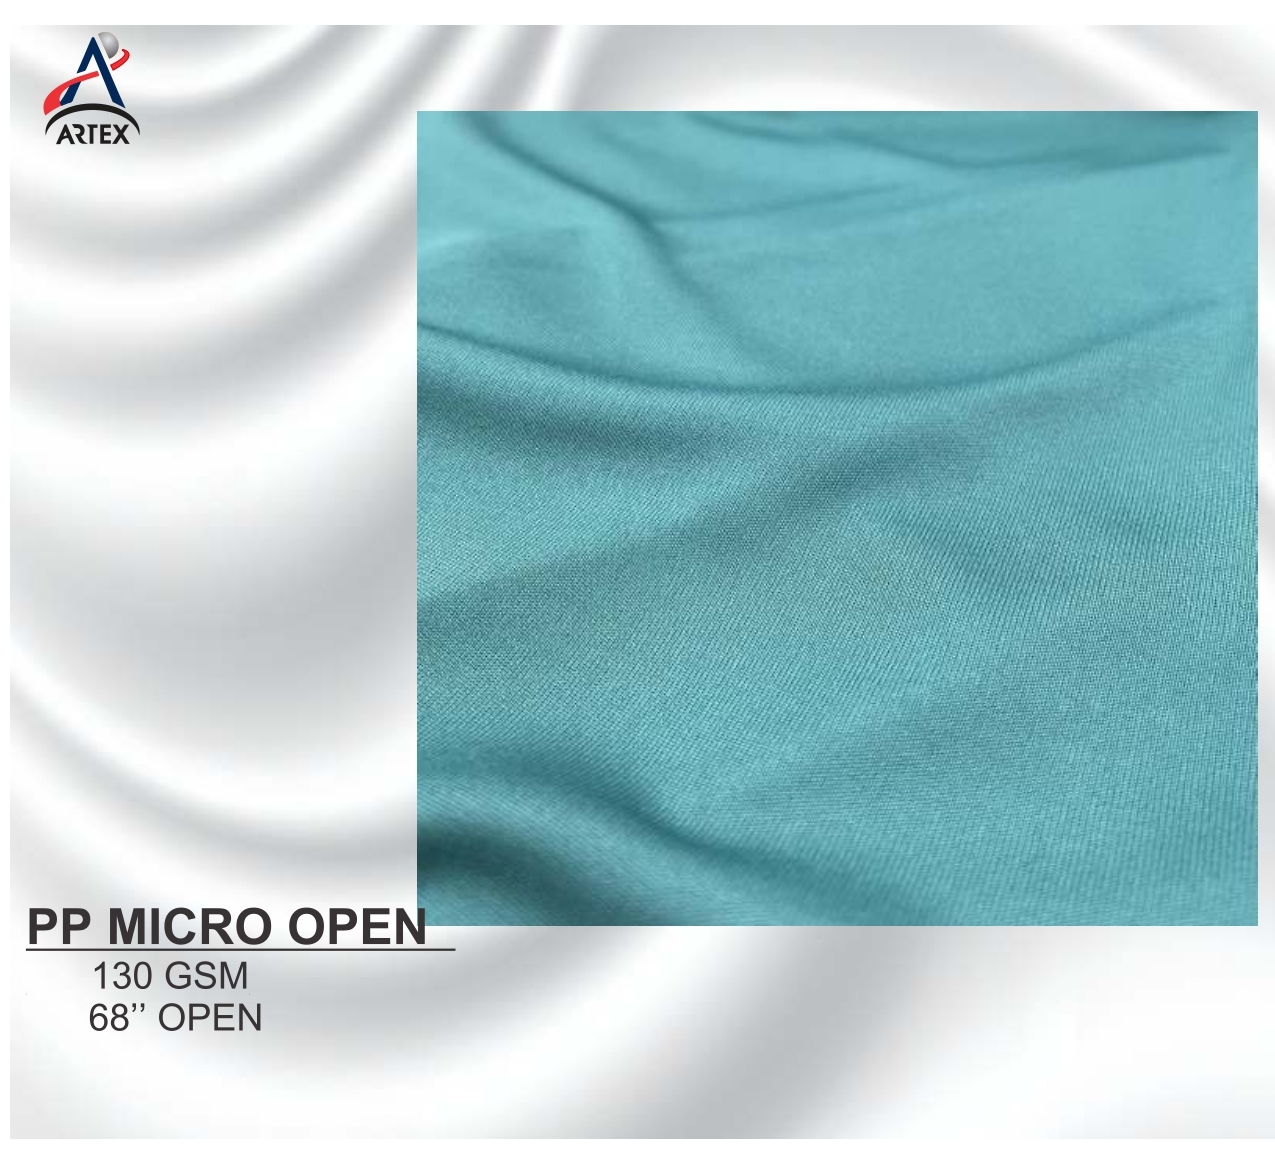 Pp micro open